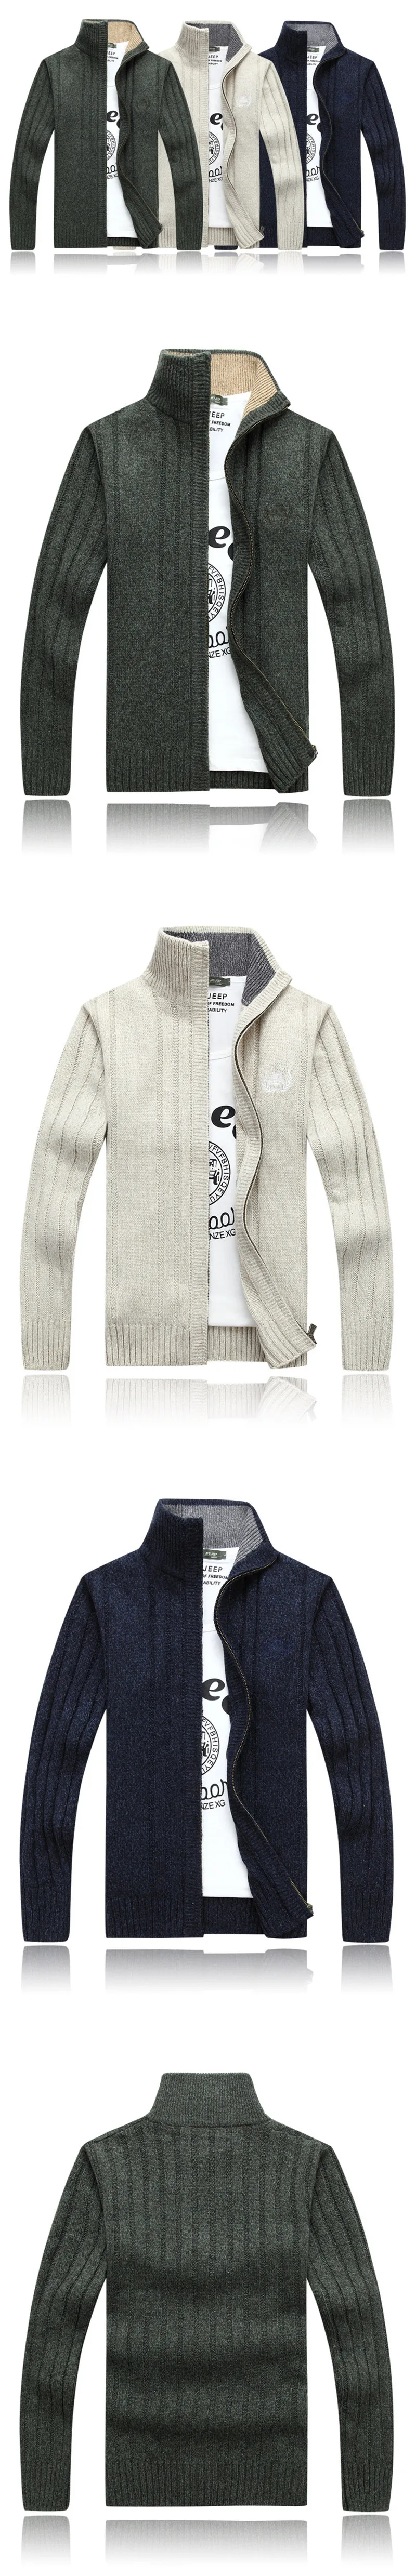 Мужской свитер осень зима шерстяной толстый мужской кардиган Модная брендовая одежда верхняя одежда вязаный свитер J724